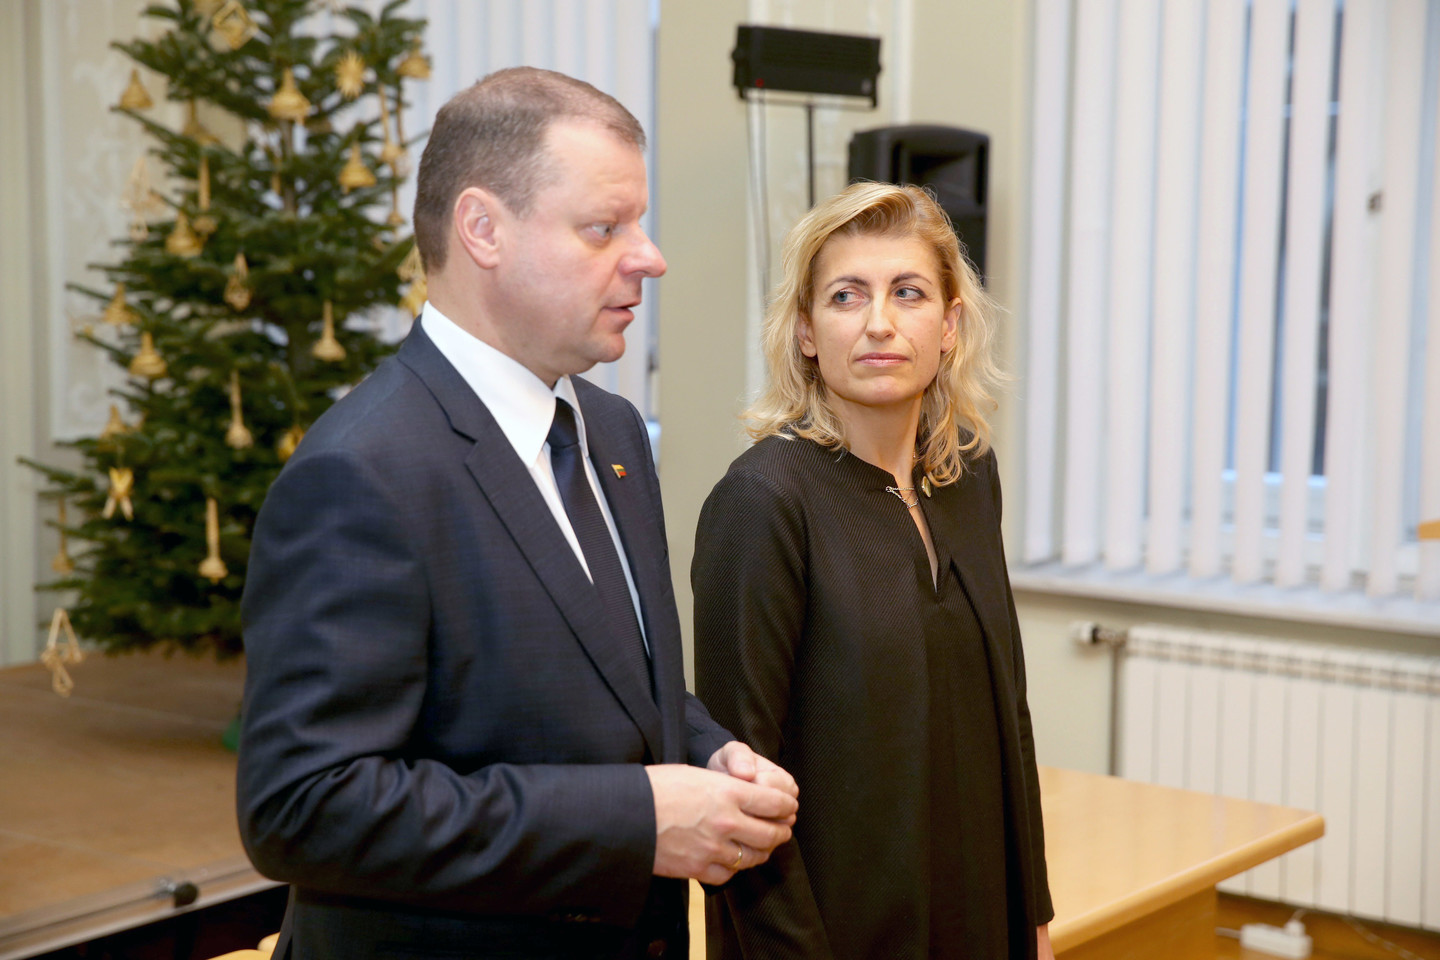 Kultūros ministerija,Skvernelis,Liana Ruokytė-Jonsson<br>R.Danisevičiaus nuotr.